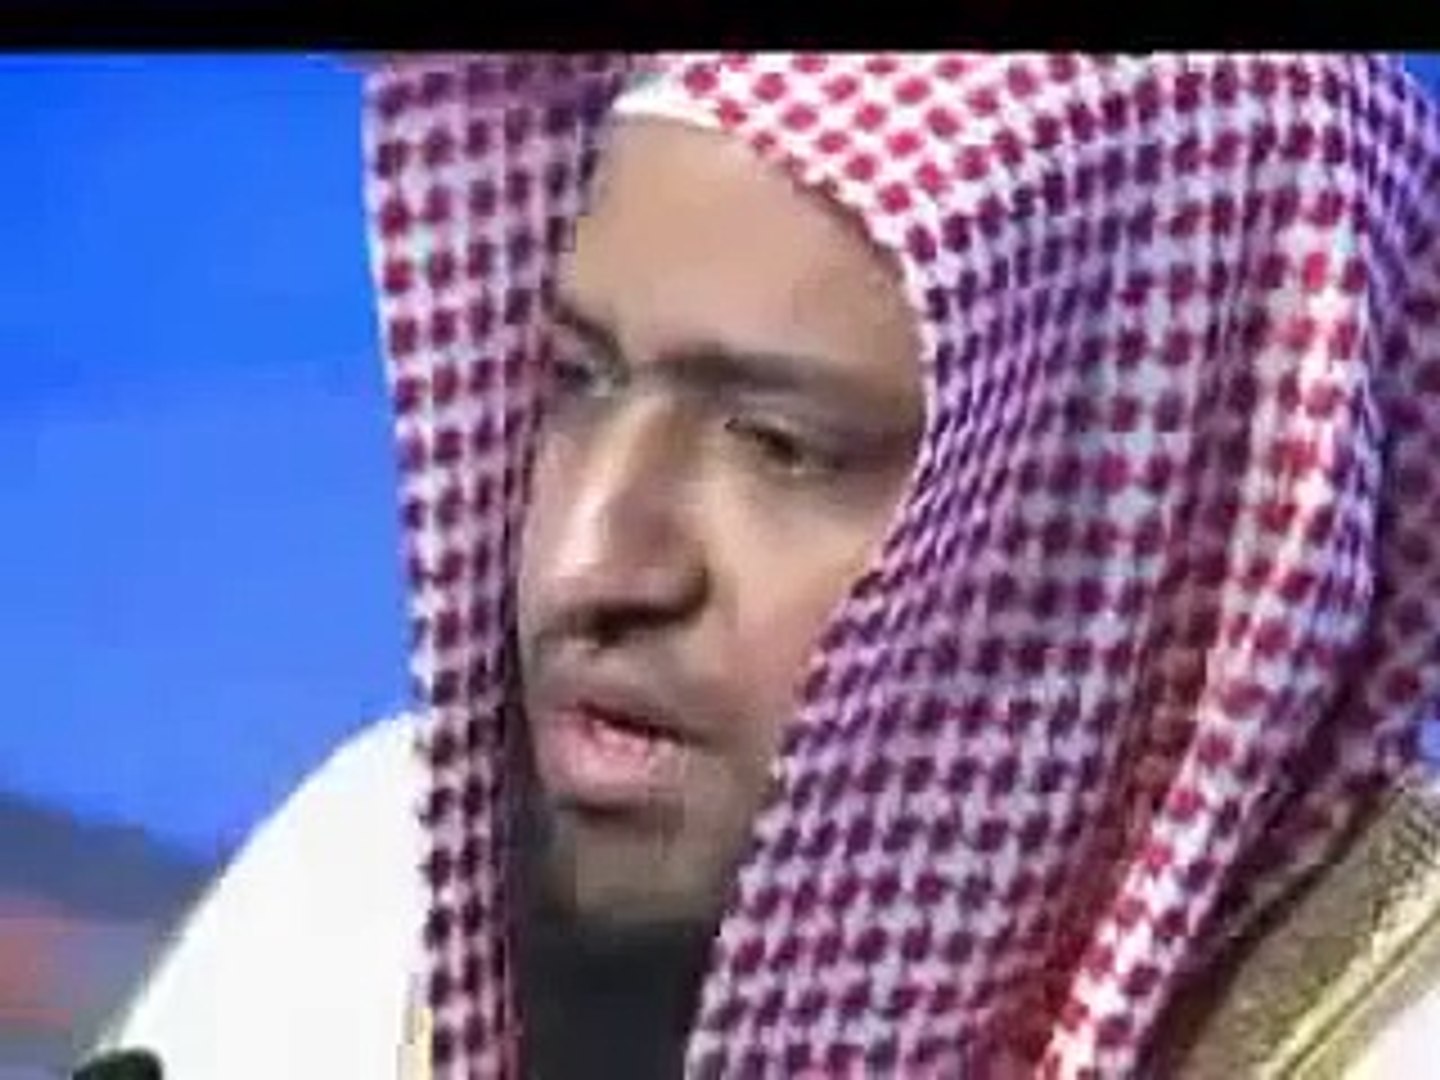 شيخ سعودى خارق فى تقليد الأصوات بصورة خيالية - فيديو Dailymotion